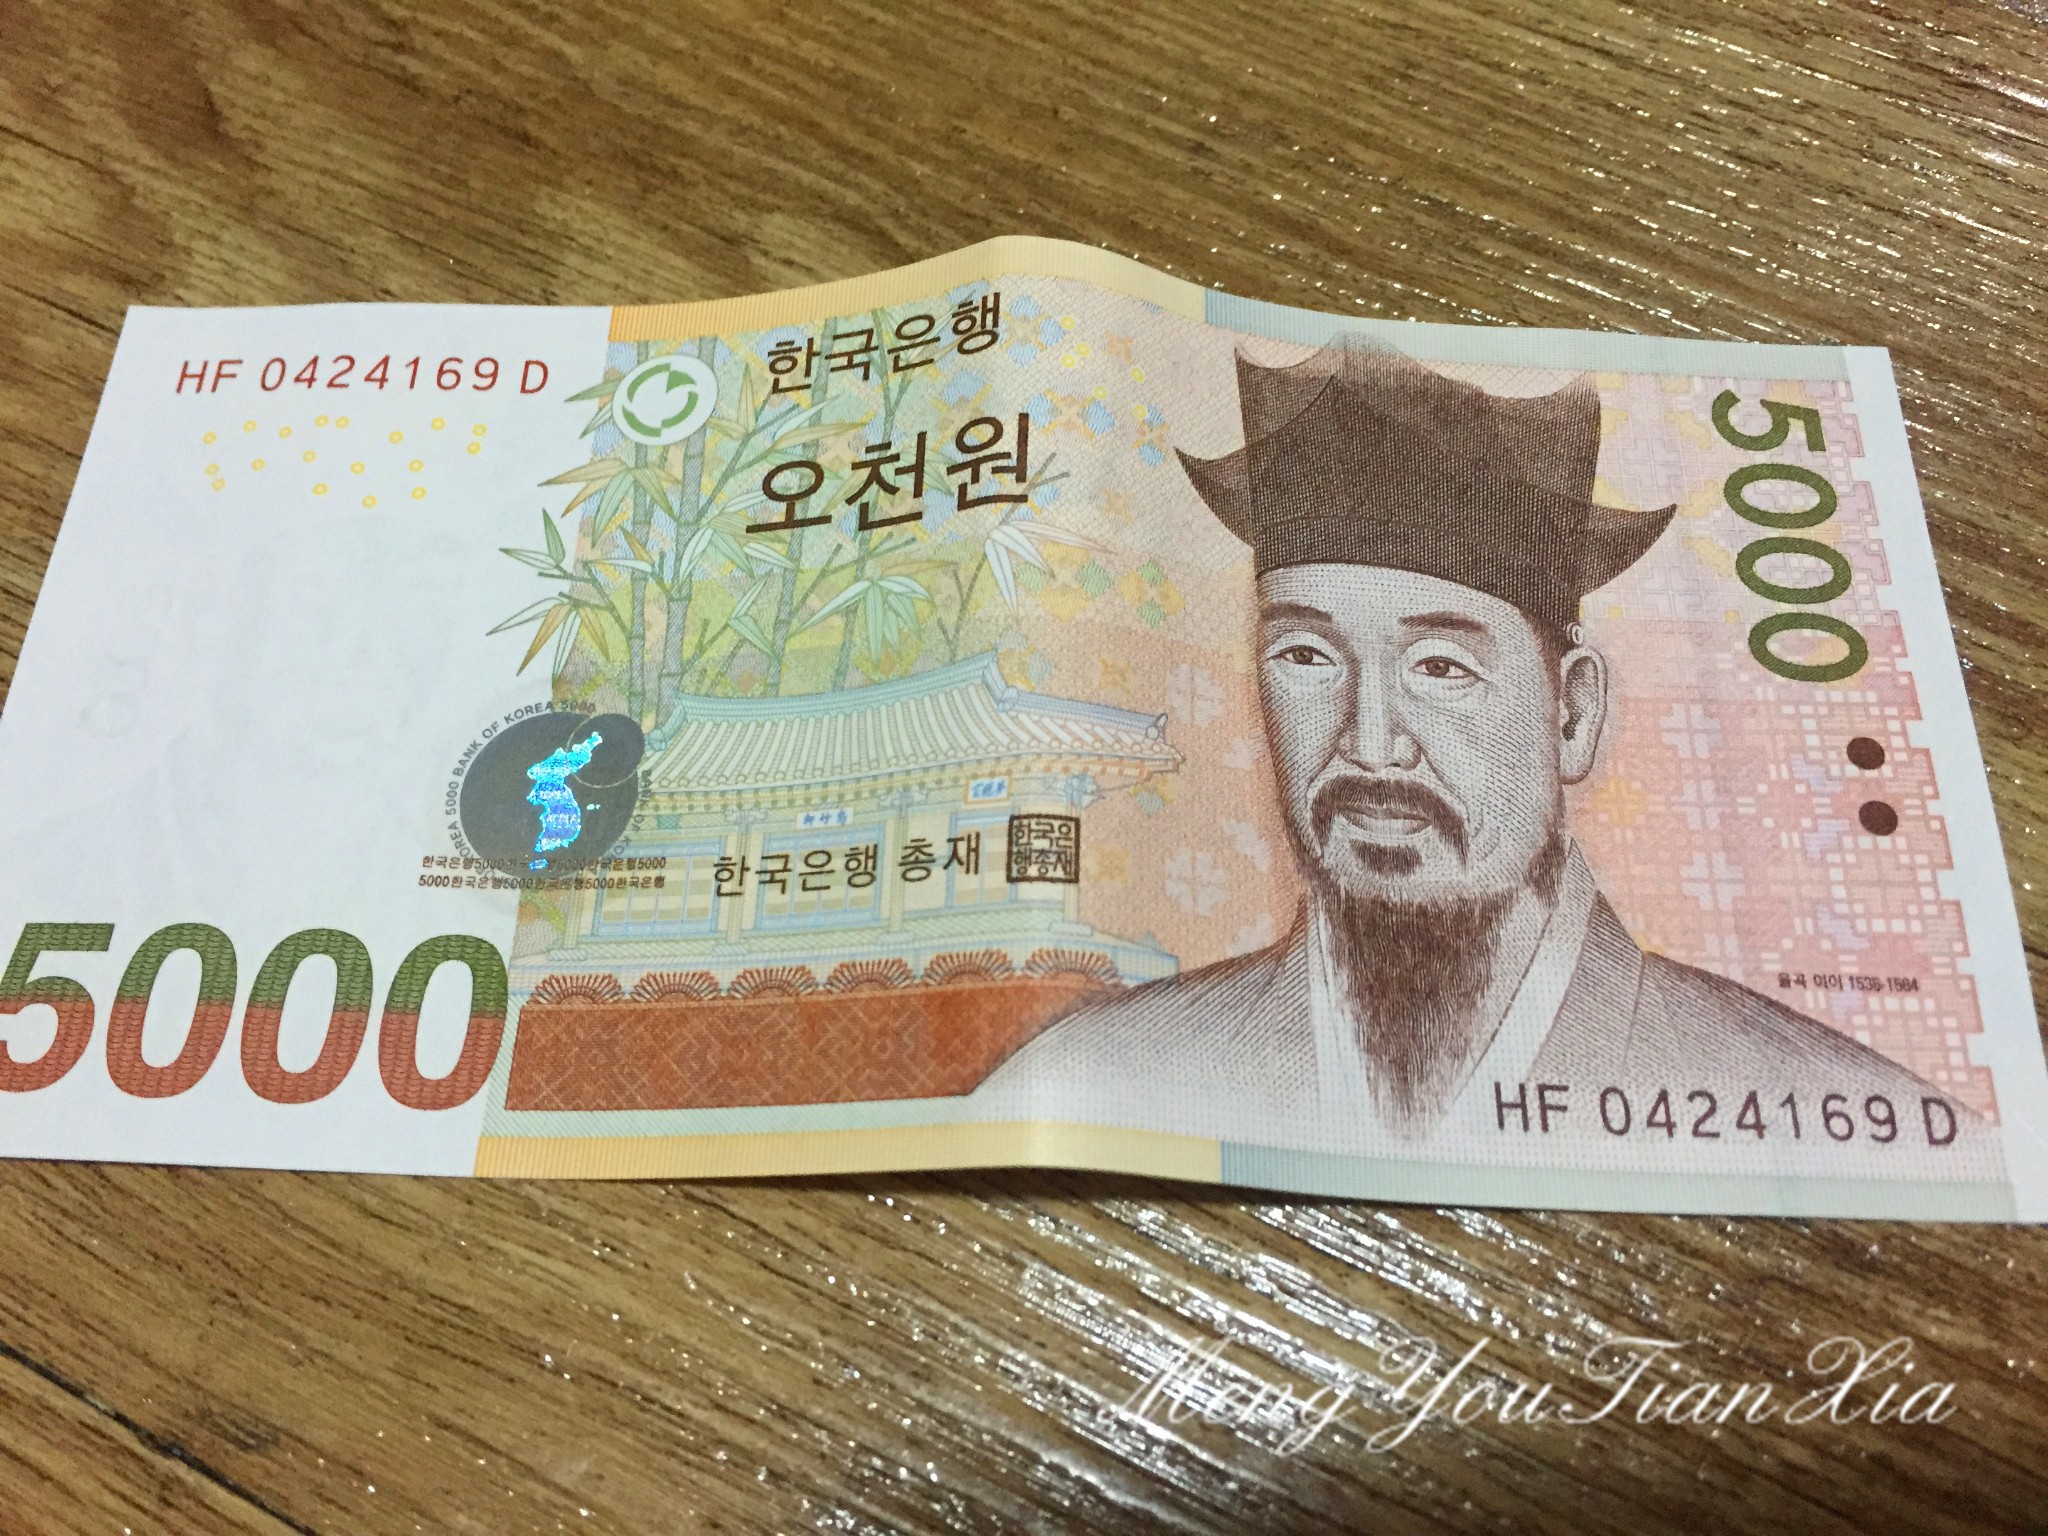  5000韩元相当于30元人民币